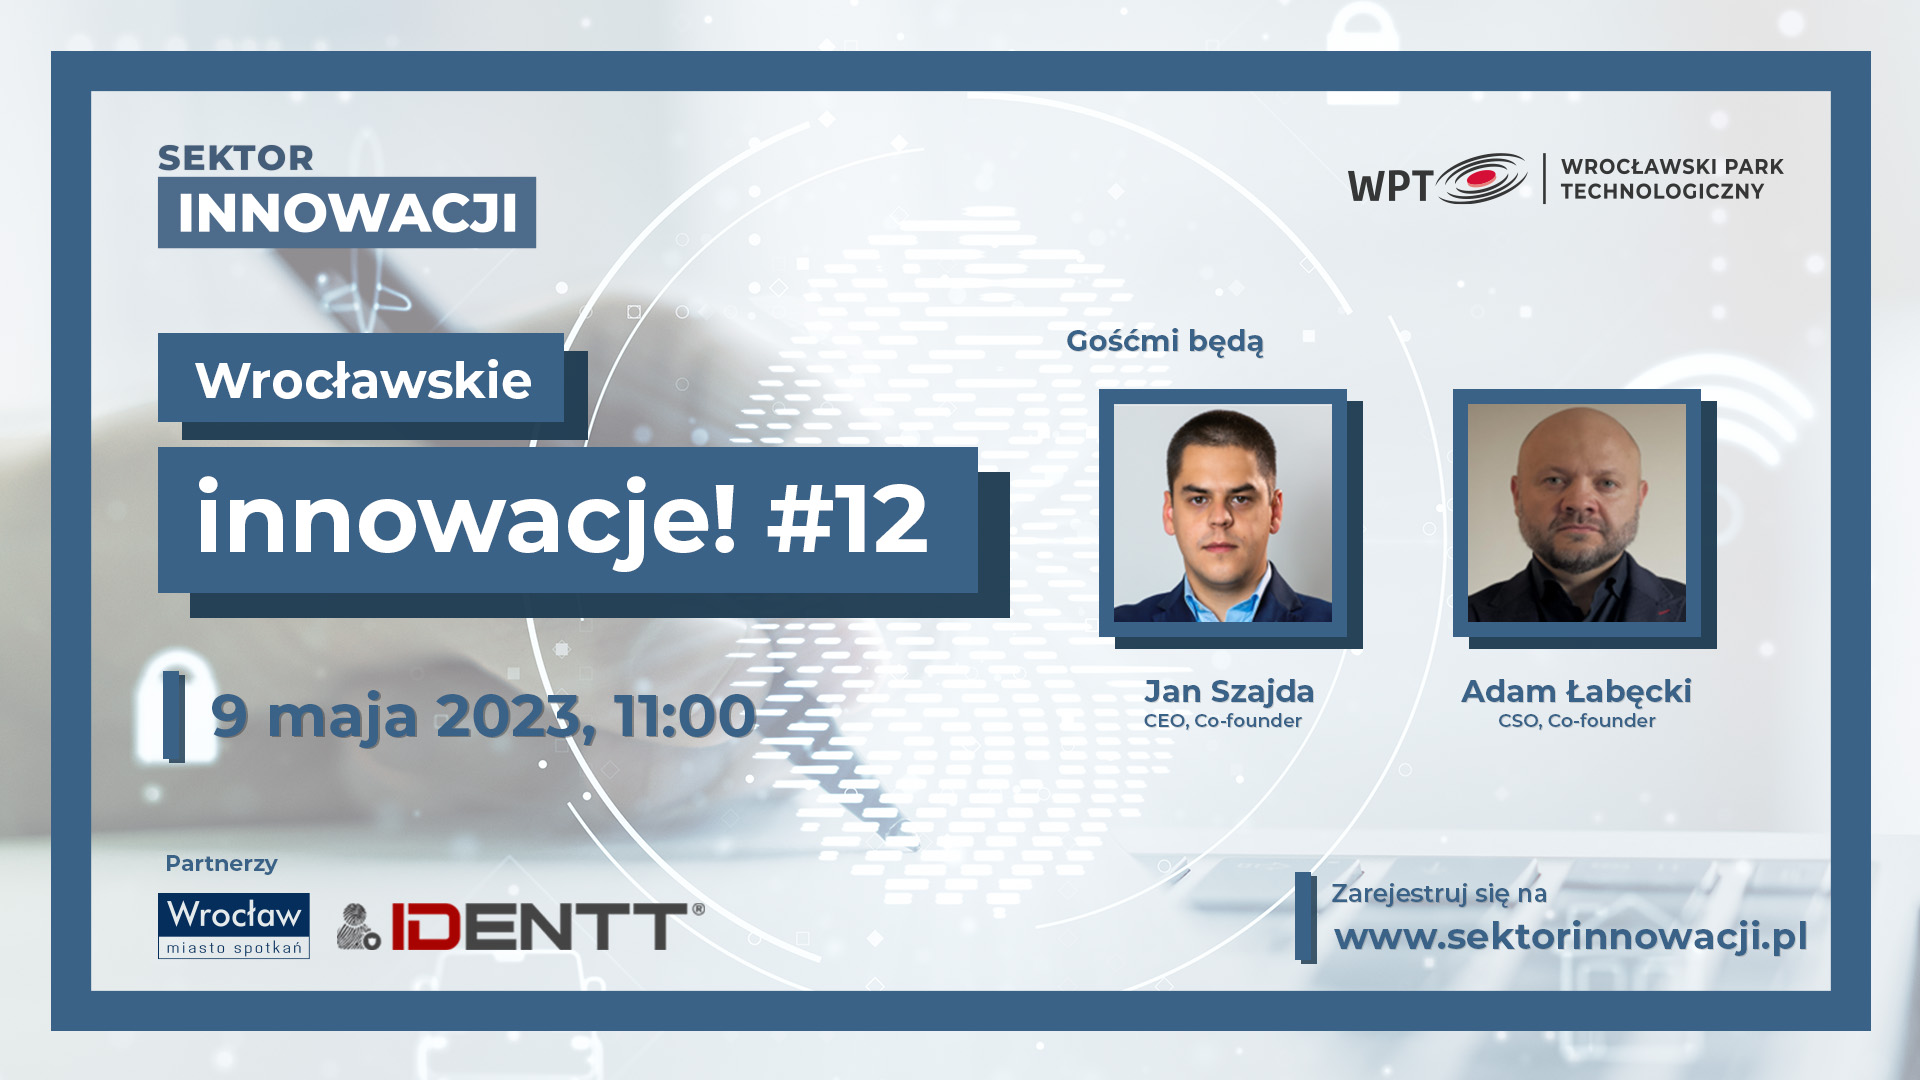 Wrocławskie innowacje #12: IDENTT